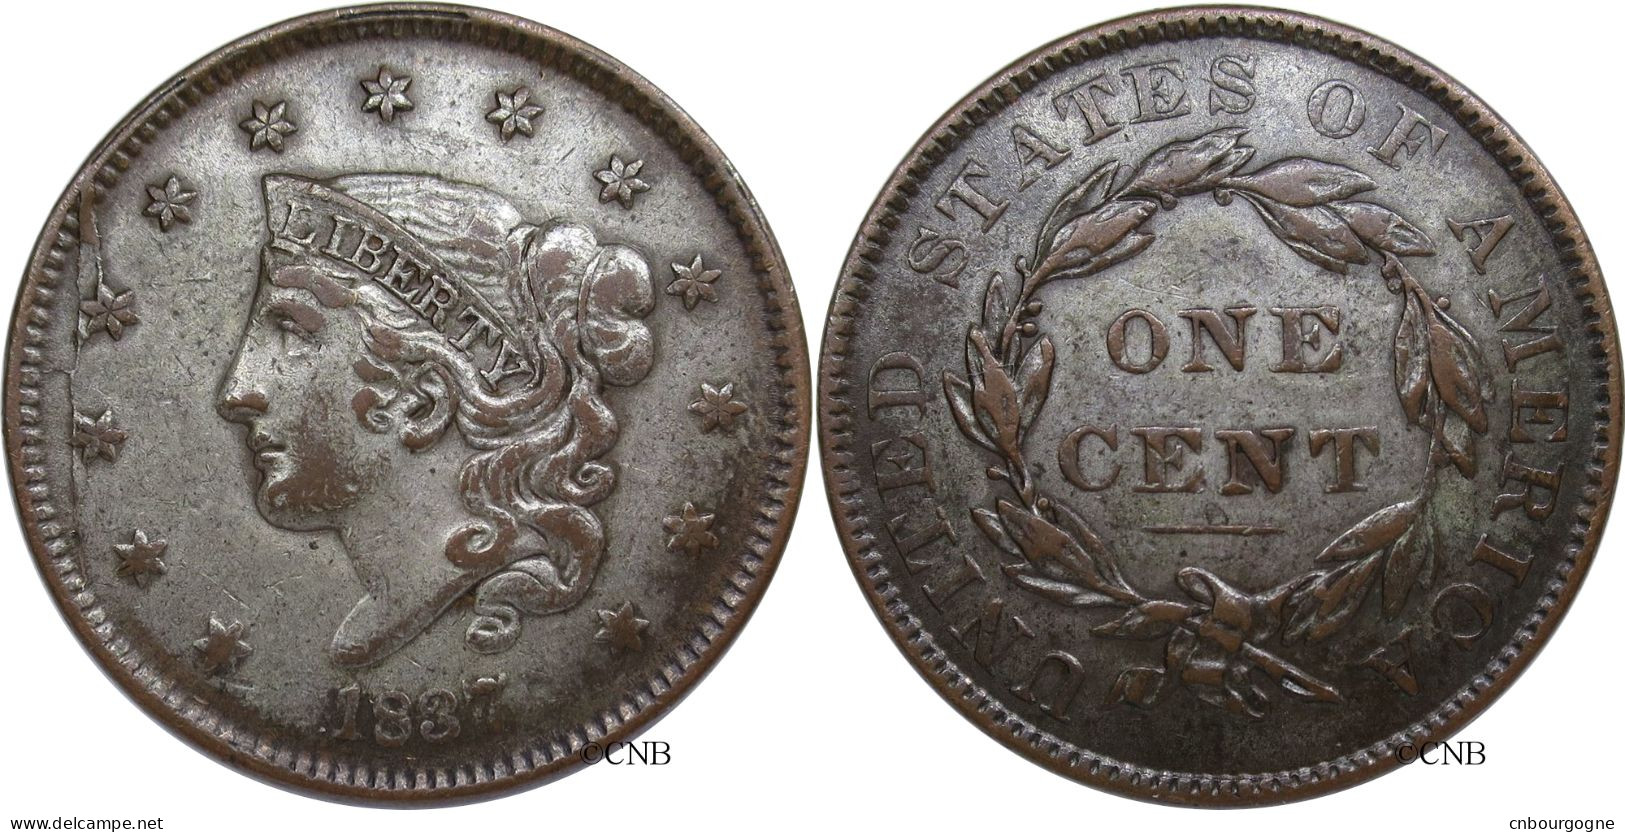 États-Unis - 1 Cent Coronet Head 1837 - TTB+/AU50 Argentée - Mon3656 - 1816-1839: Coronet Head (Tête Couronnée)